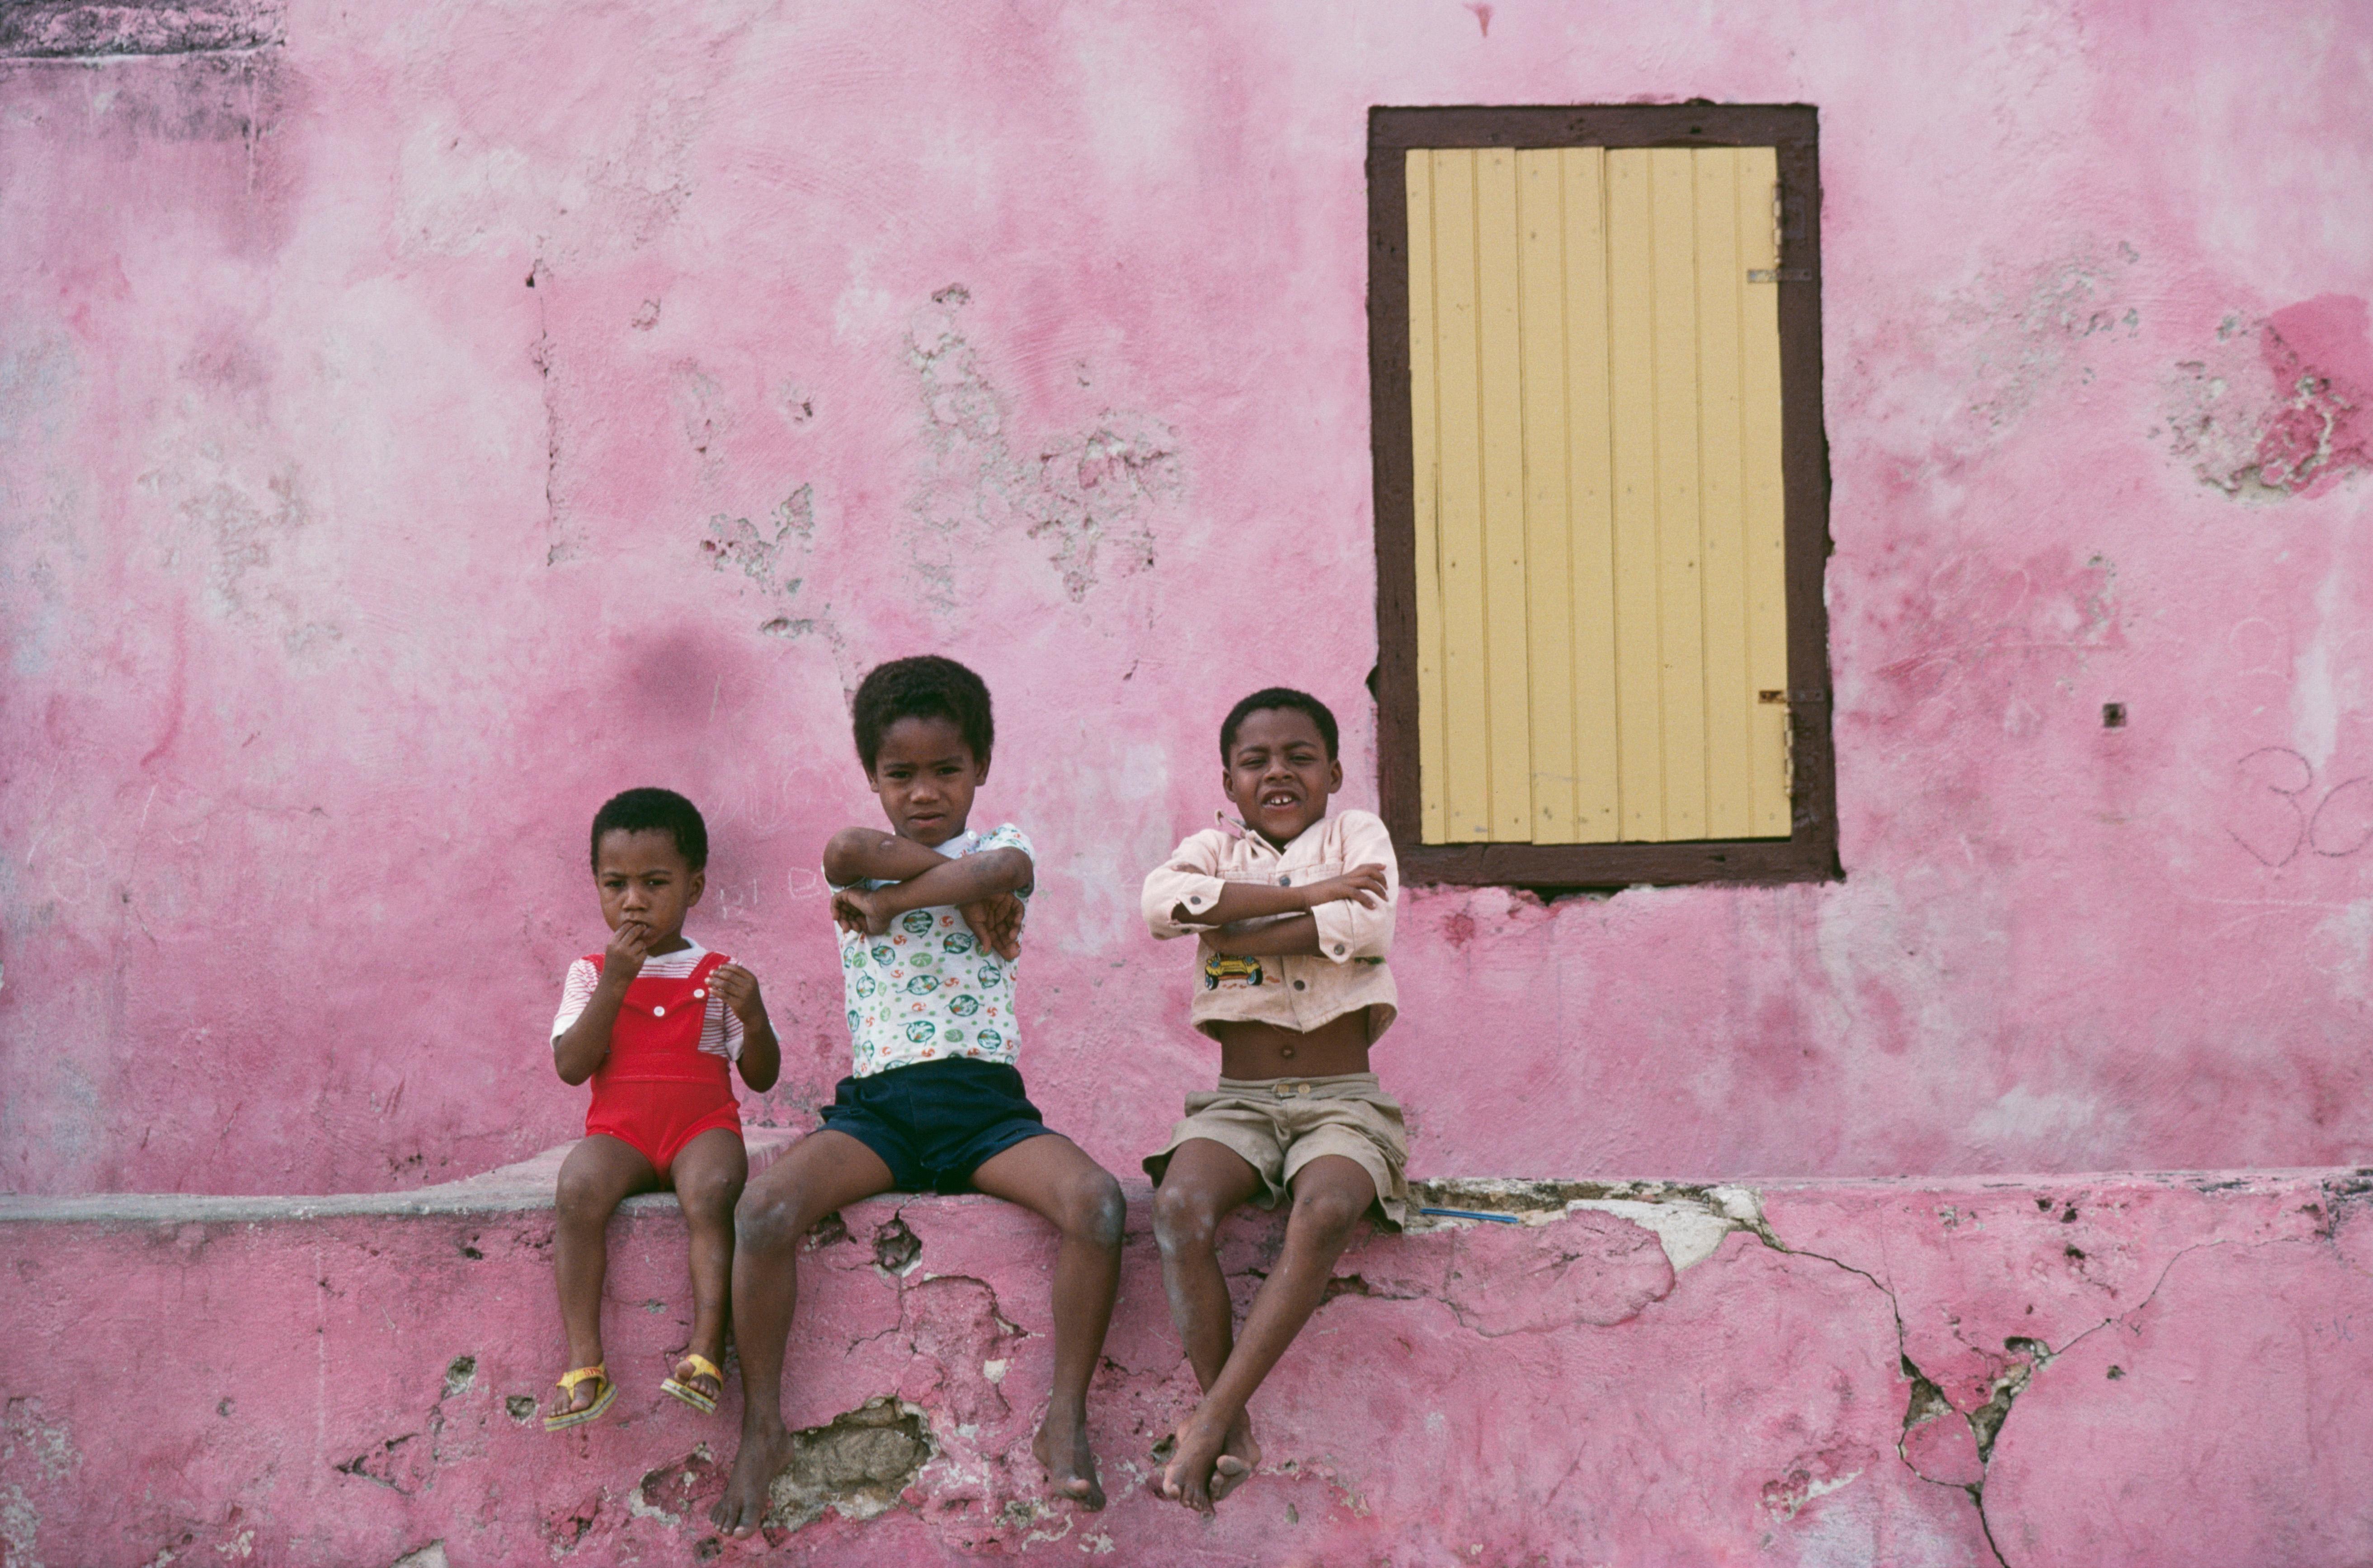 curacao Children' 1979 Slim Aarons Limitierte Nachlassausgabe Druck 

Drei einheimische Kinder sitzen auf einer niedrigen Mauer, Curacao, Niederländische Antillen, Januar 1979. (Foto: Slim Aarons/Getty Images)

Hergestellt aus der